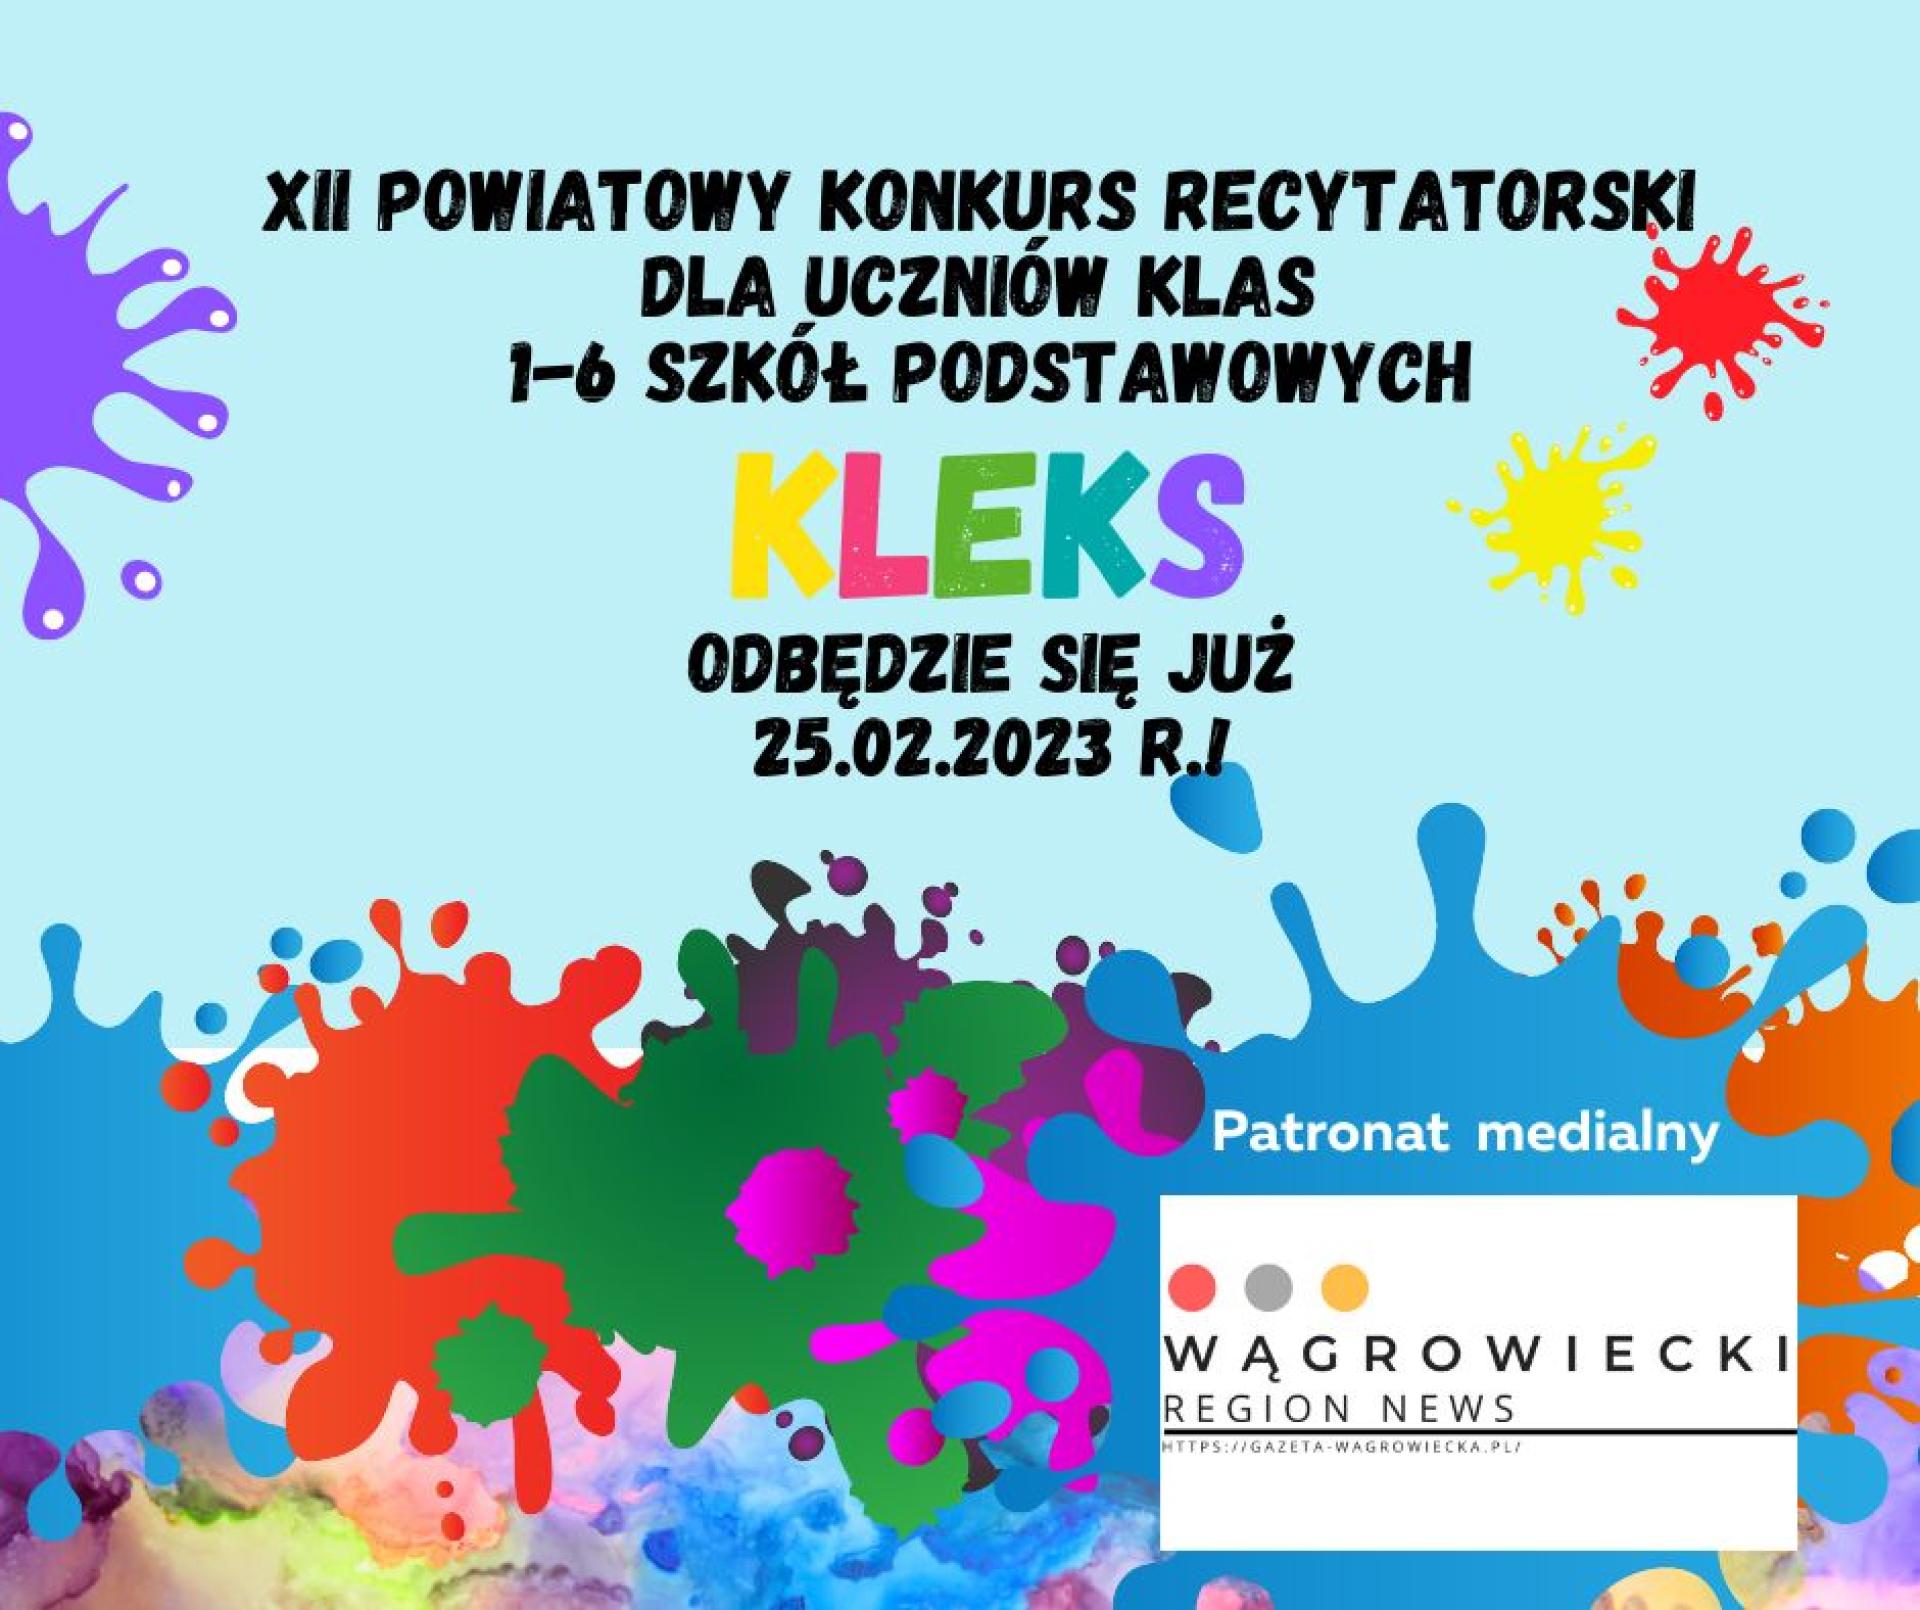 XII Powiatowy Konkurs Recytatorski "KLEKS"